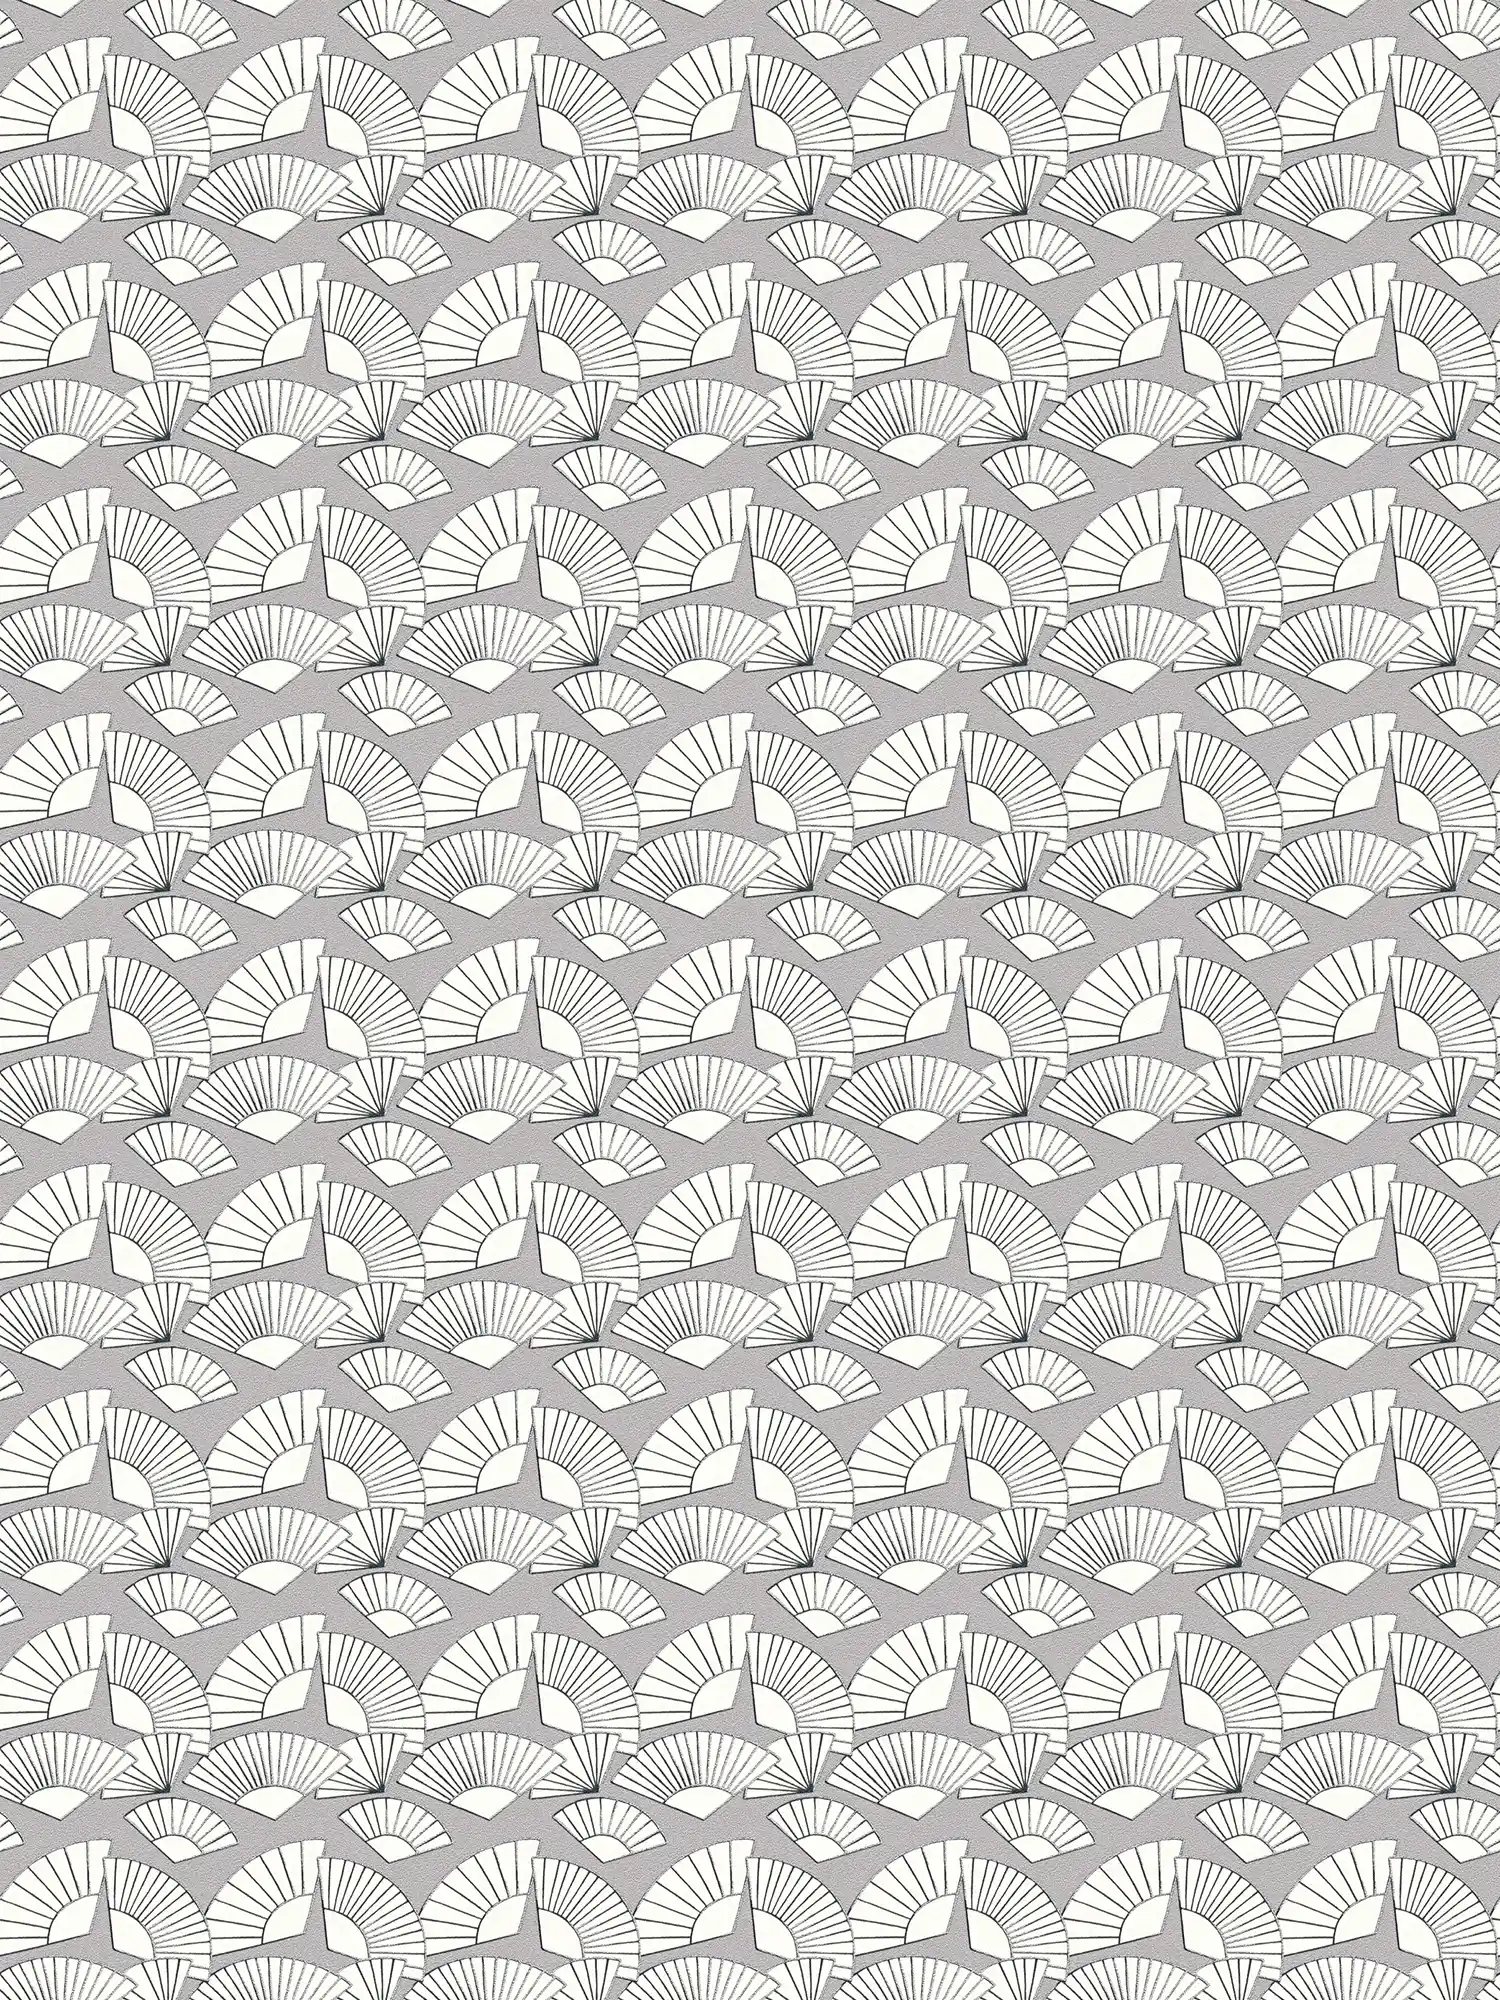 Tapete Karl LAGERFELD Fächer Muster – Metallic, Weiß
